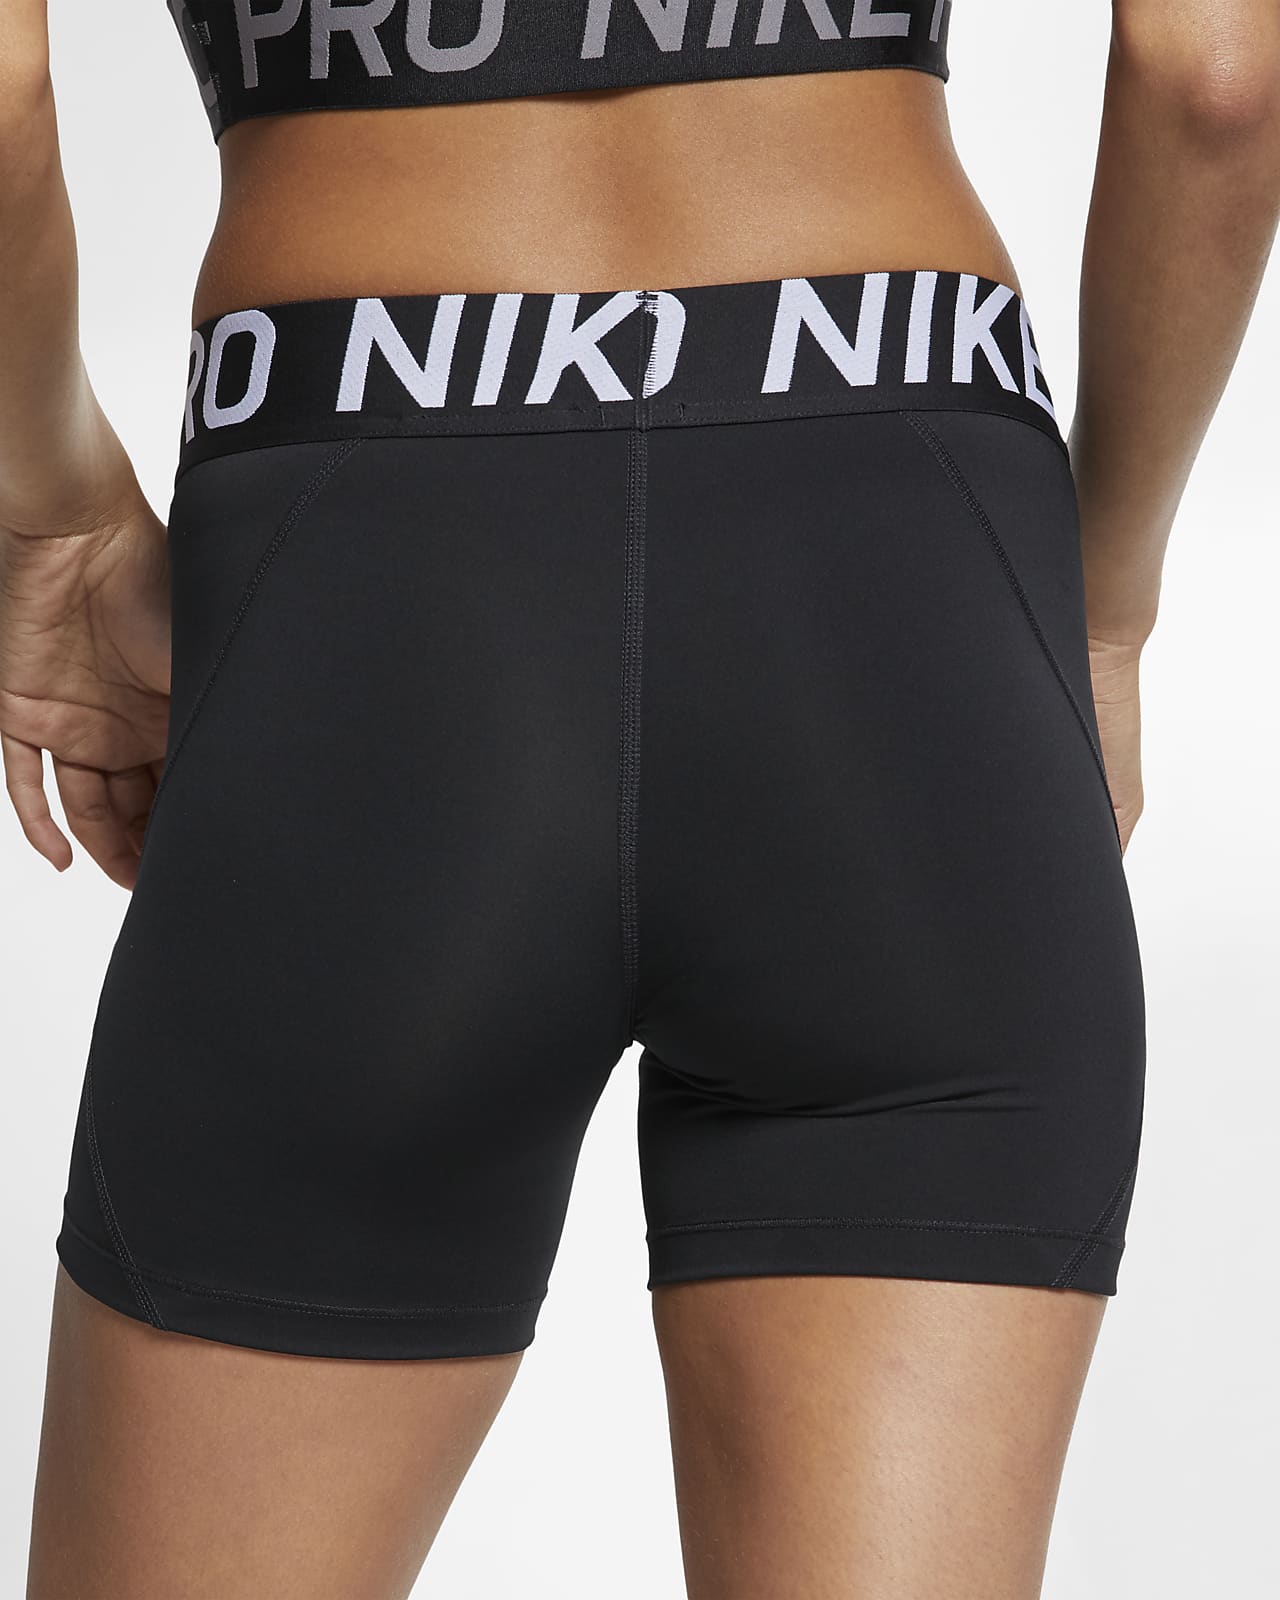 5 nike pro shorts